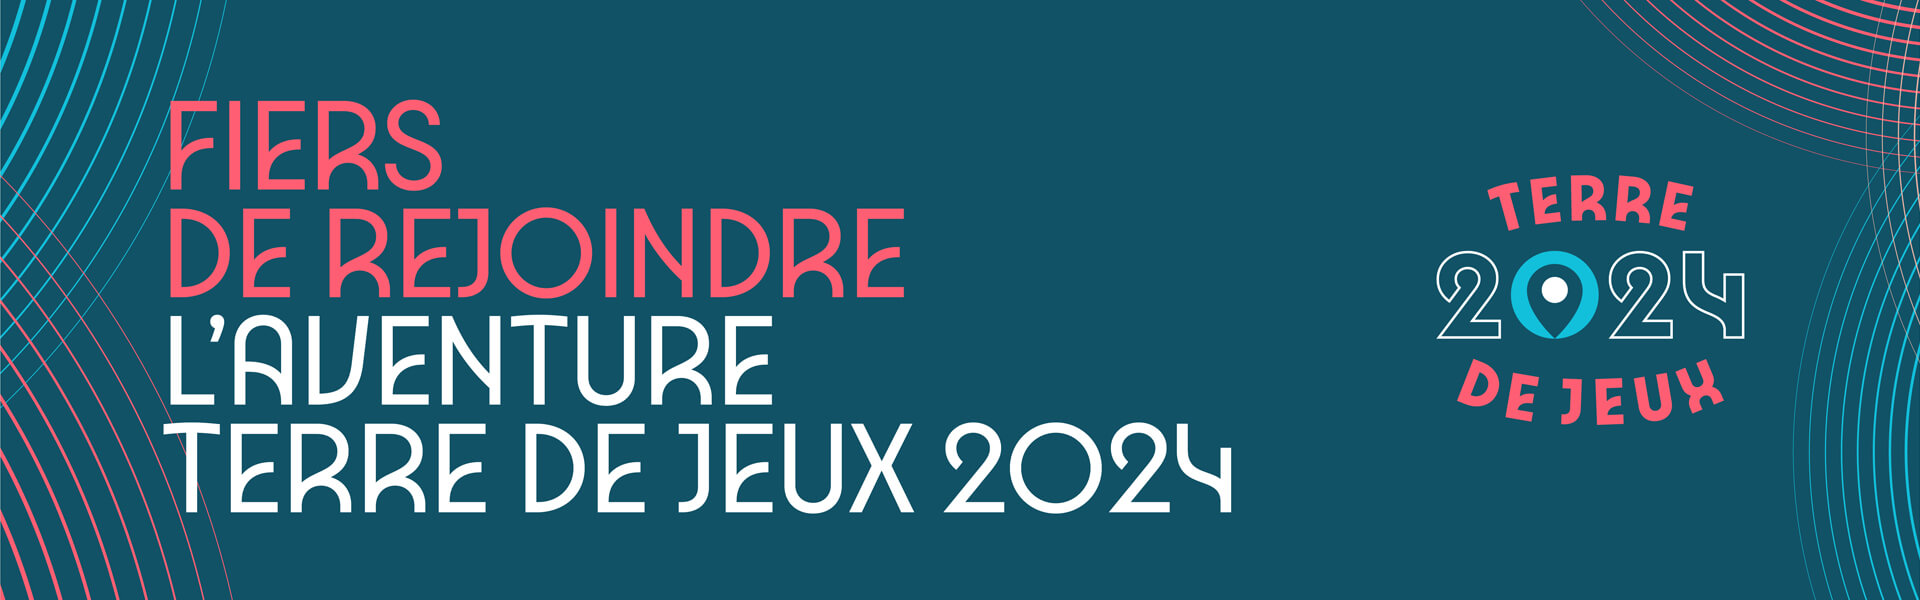 Banniere Jeux Olympiques 2024 Evron Terre de jeux Mayenne 2024